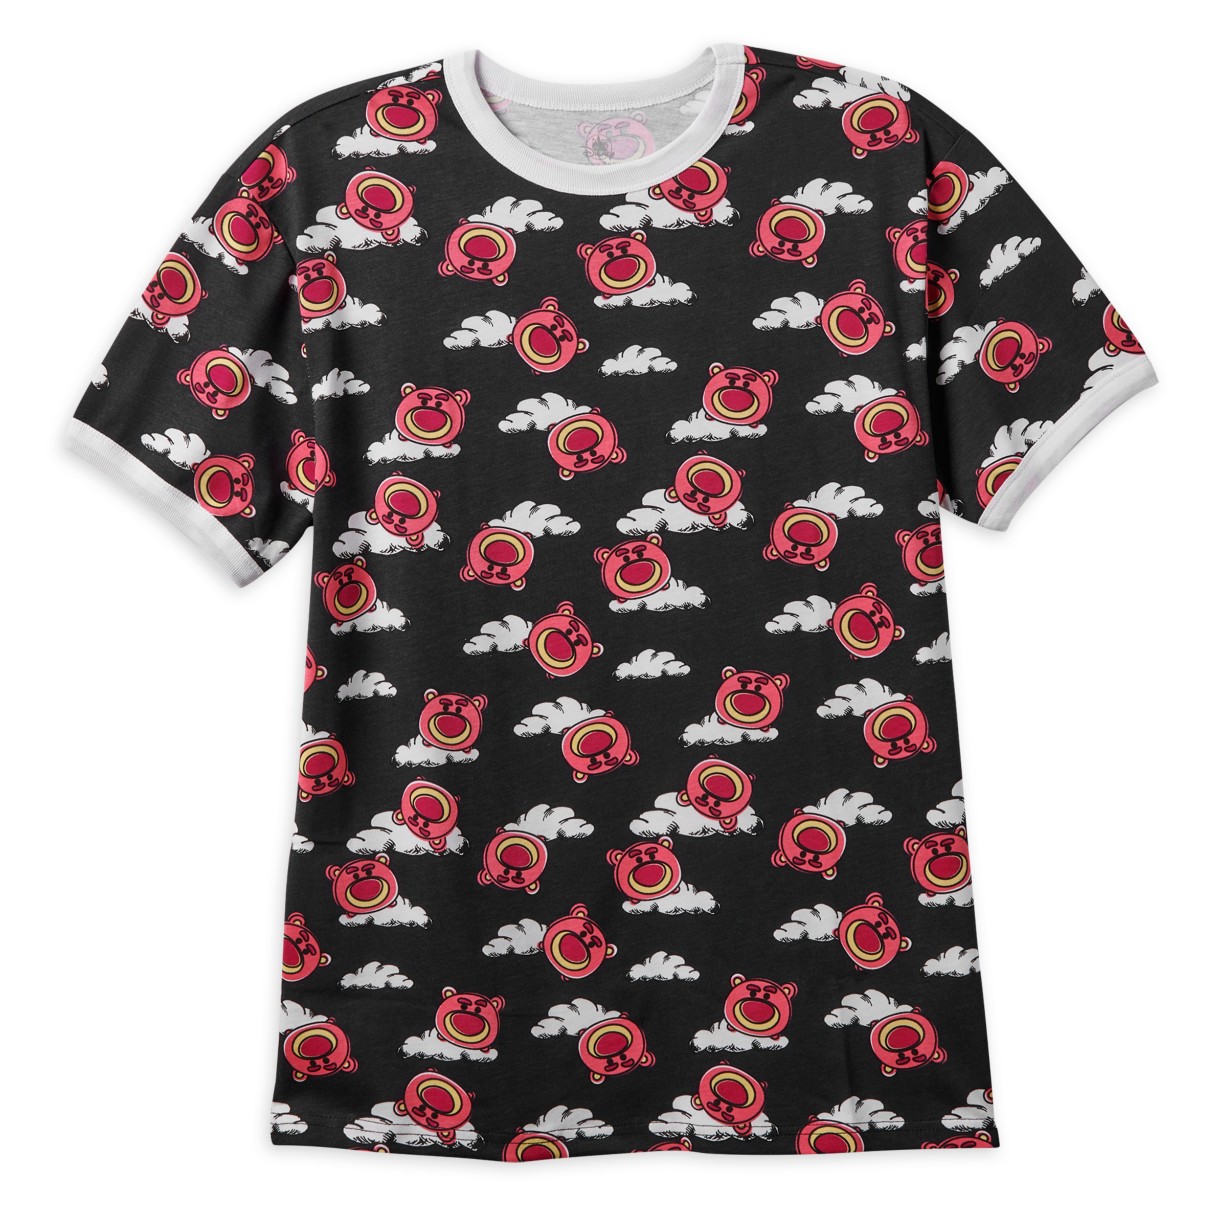 Lotso Ringer T-Shirt for Women – Toy Story 3